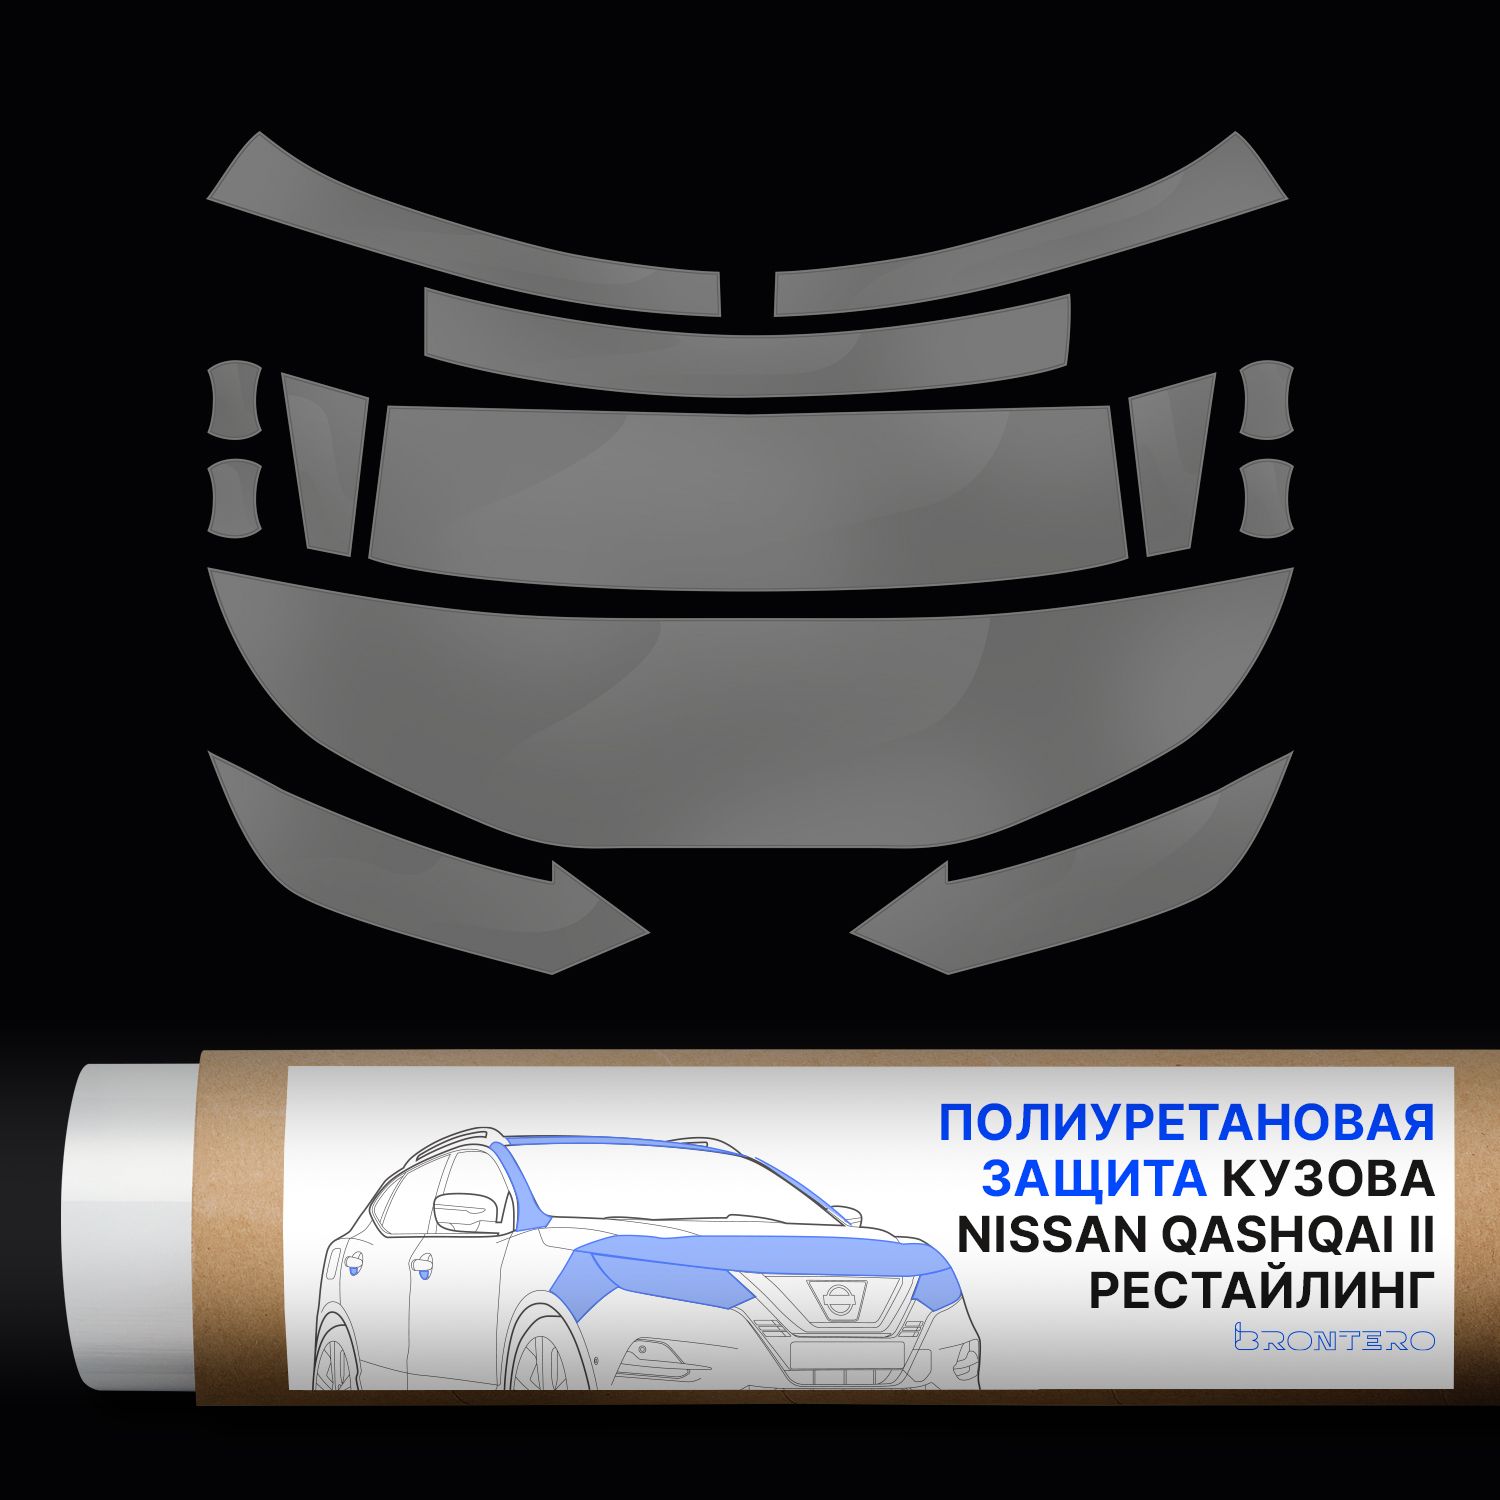 Комплект полиуретановых пленок Brontero для защиты Nissan Qashqai II-рестайлинг.